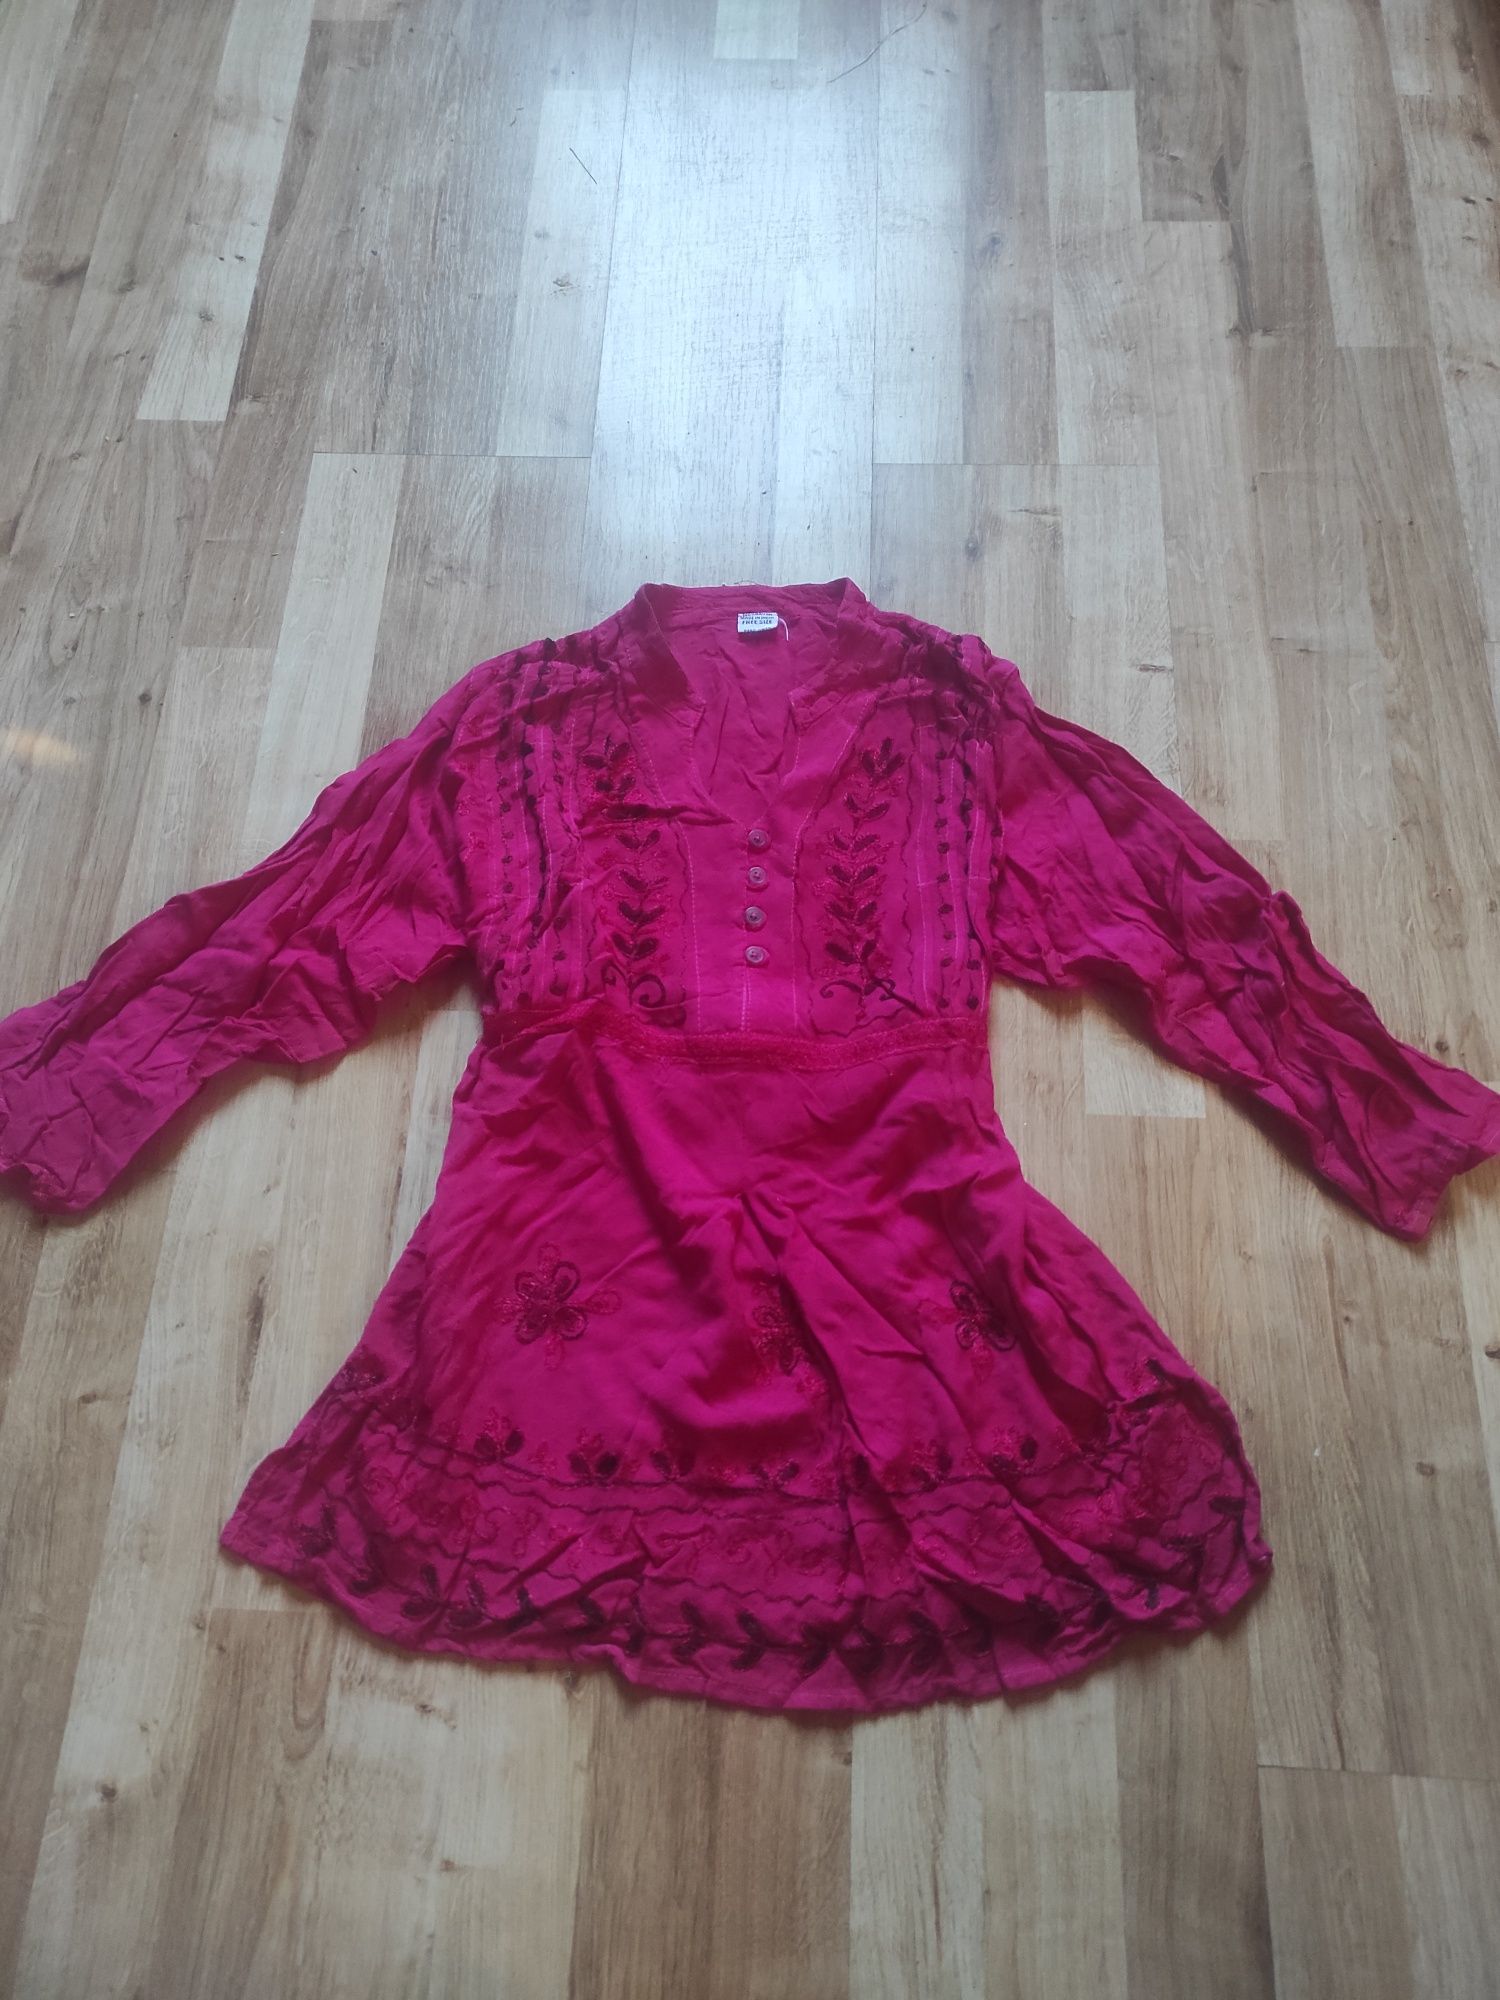 Bluzka tunika różowa z wyszywanymi ozdobami rozmiar s/m 100% rayon mad